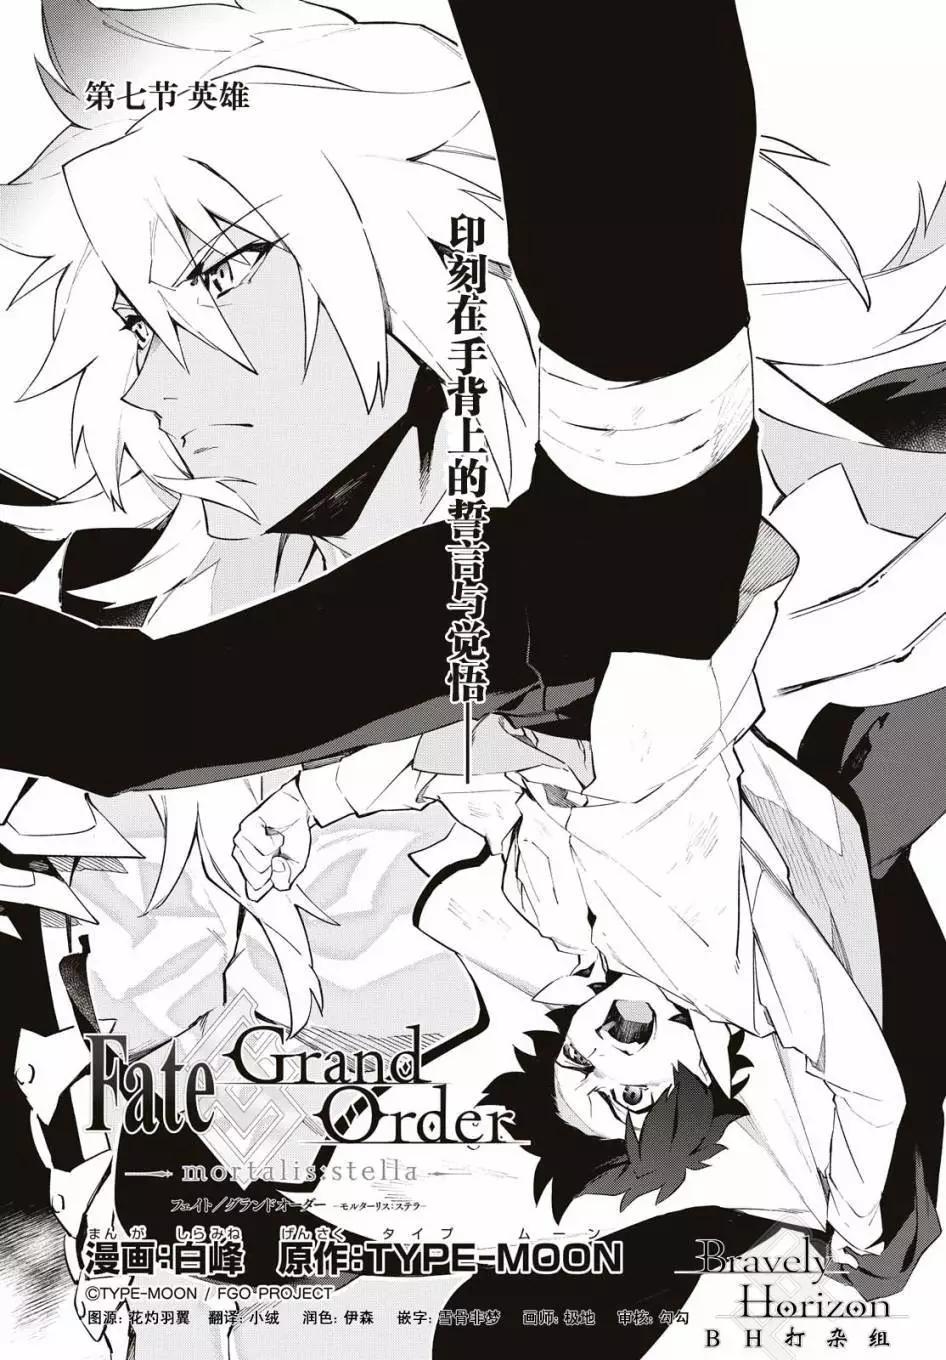 Fate Grand Order-mortalis:stella- - 第07回 - 5